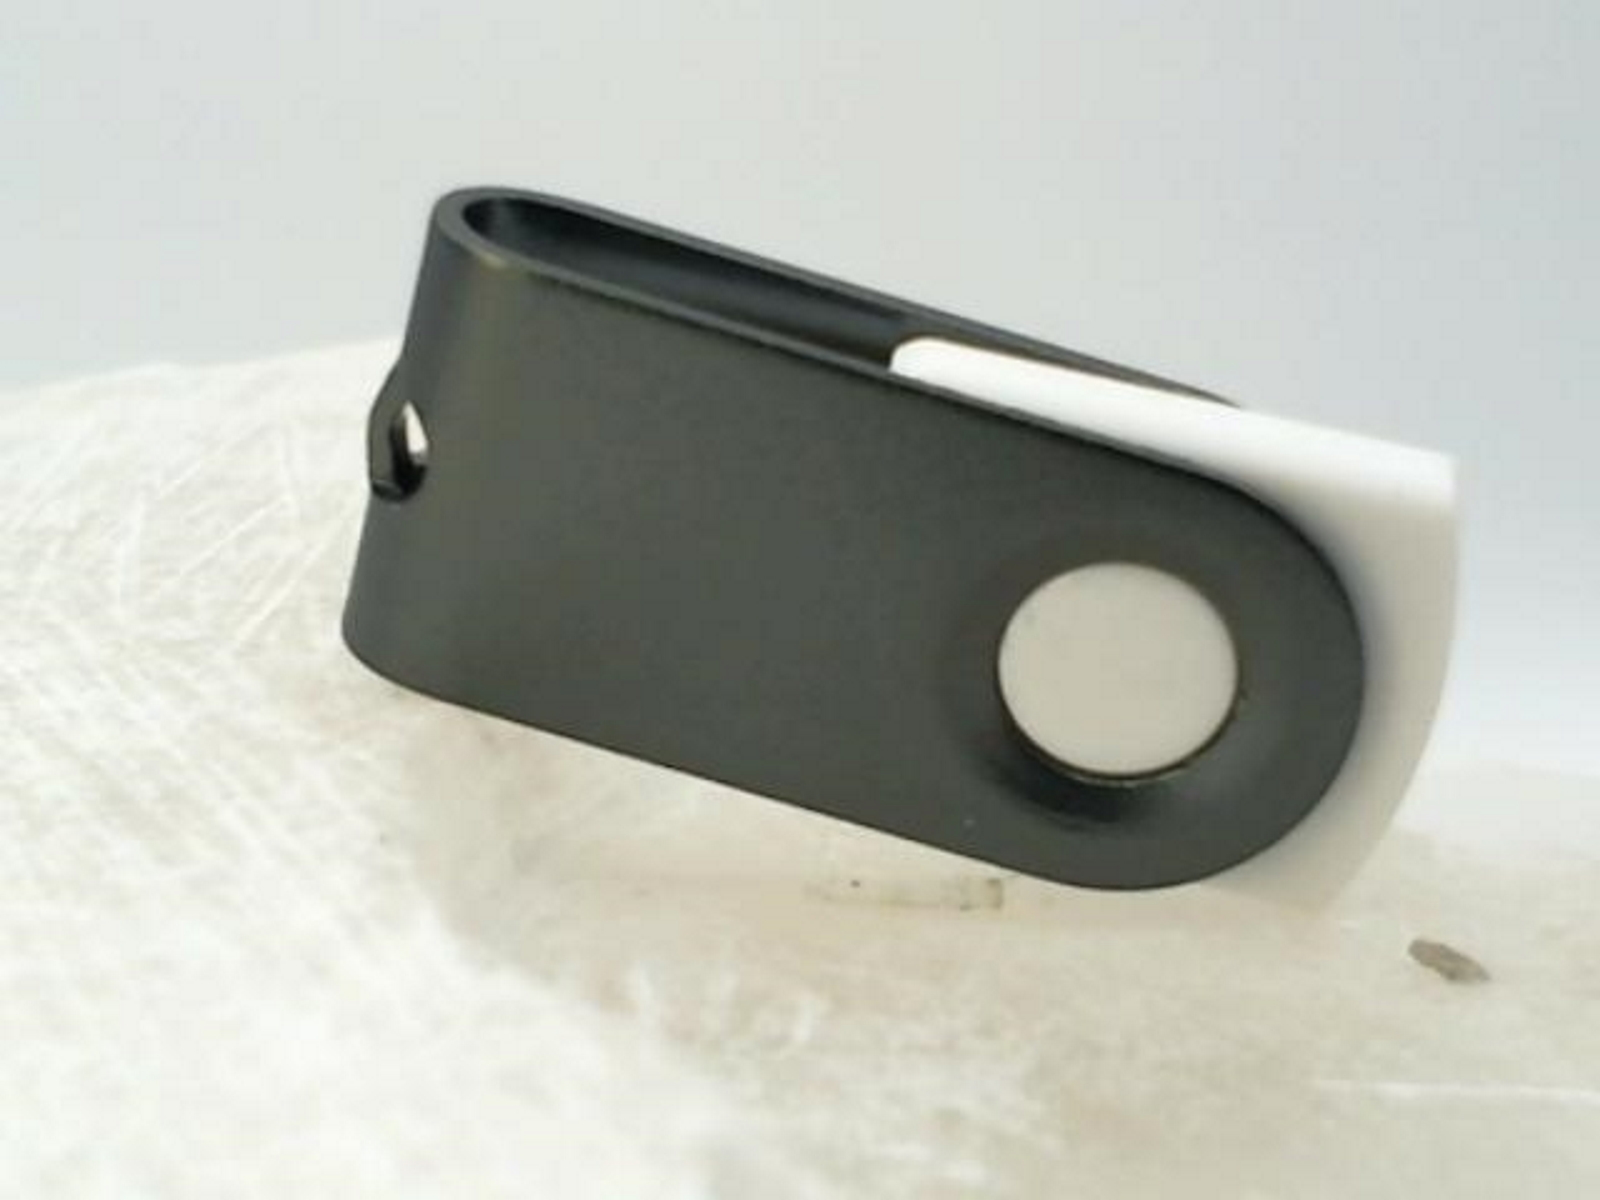 MINI-SWIVEL GERMANY (Weiß-Graumetall, USB-Stick USB ® GB) 8